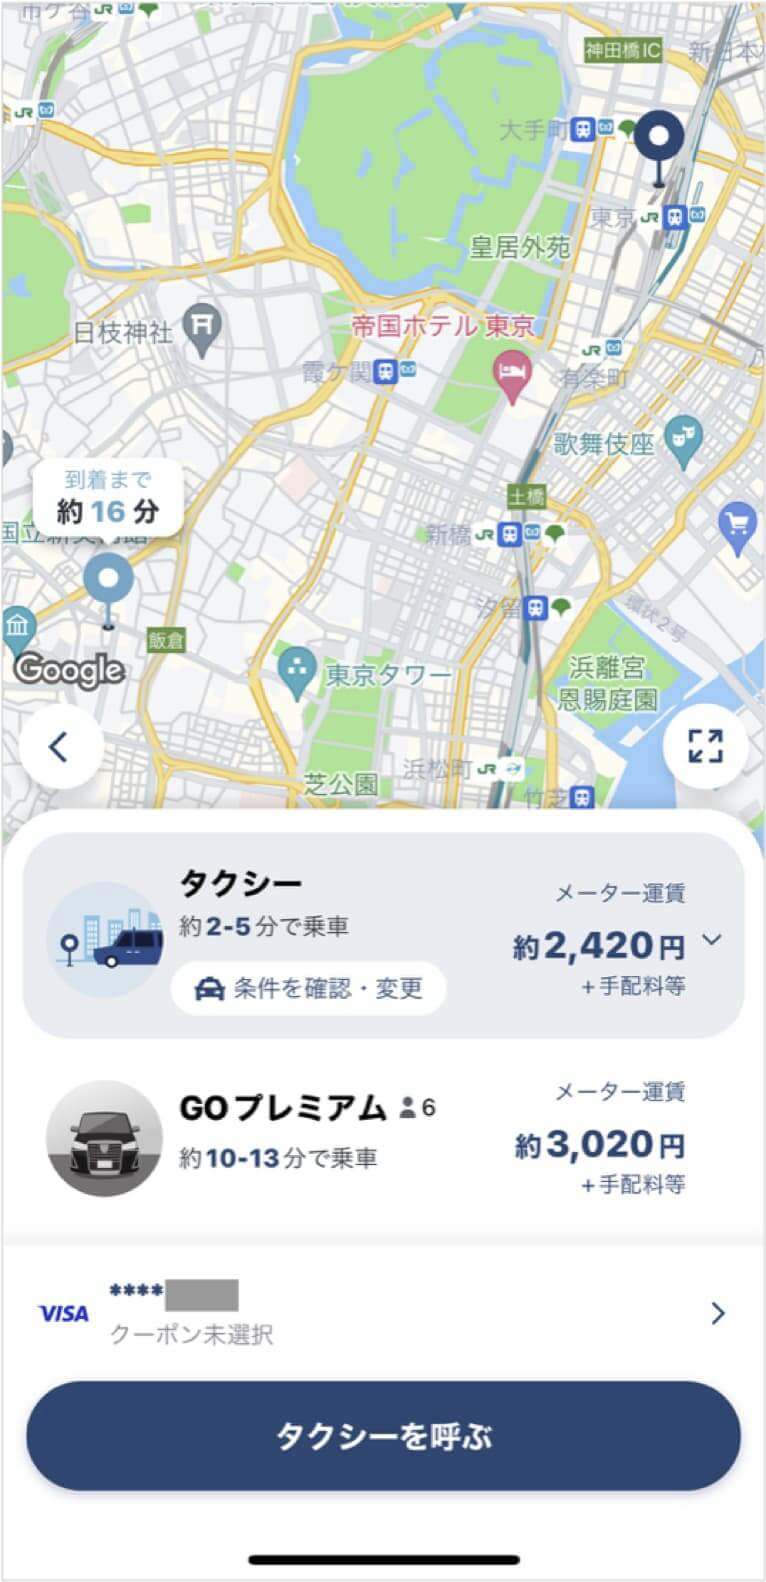 東京駅から六本木までのタクシー料金・所要時間まとめ